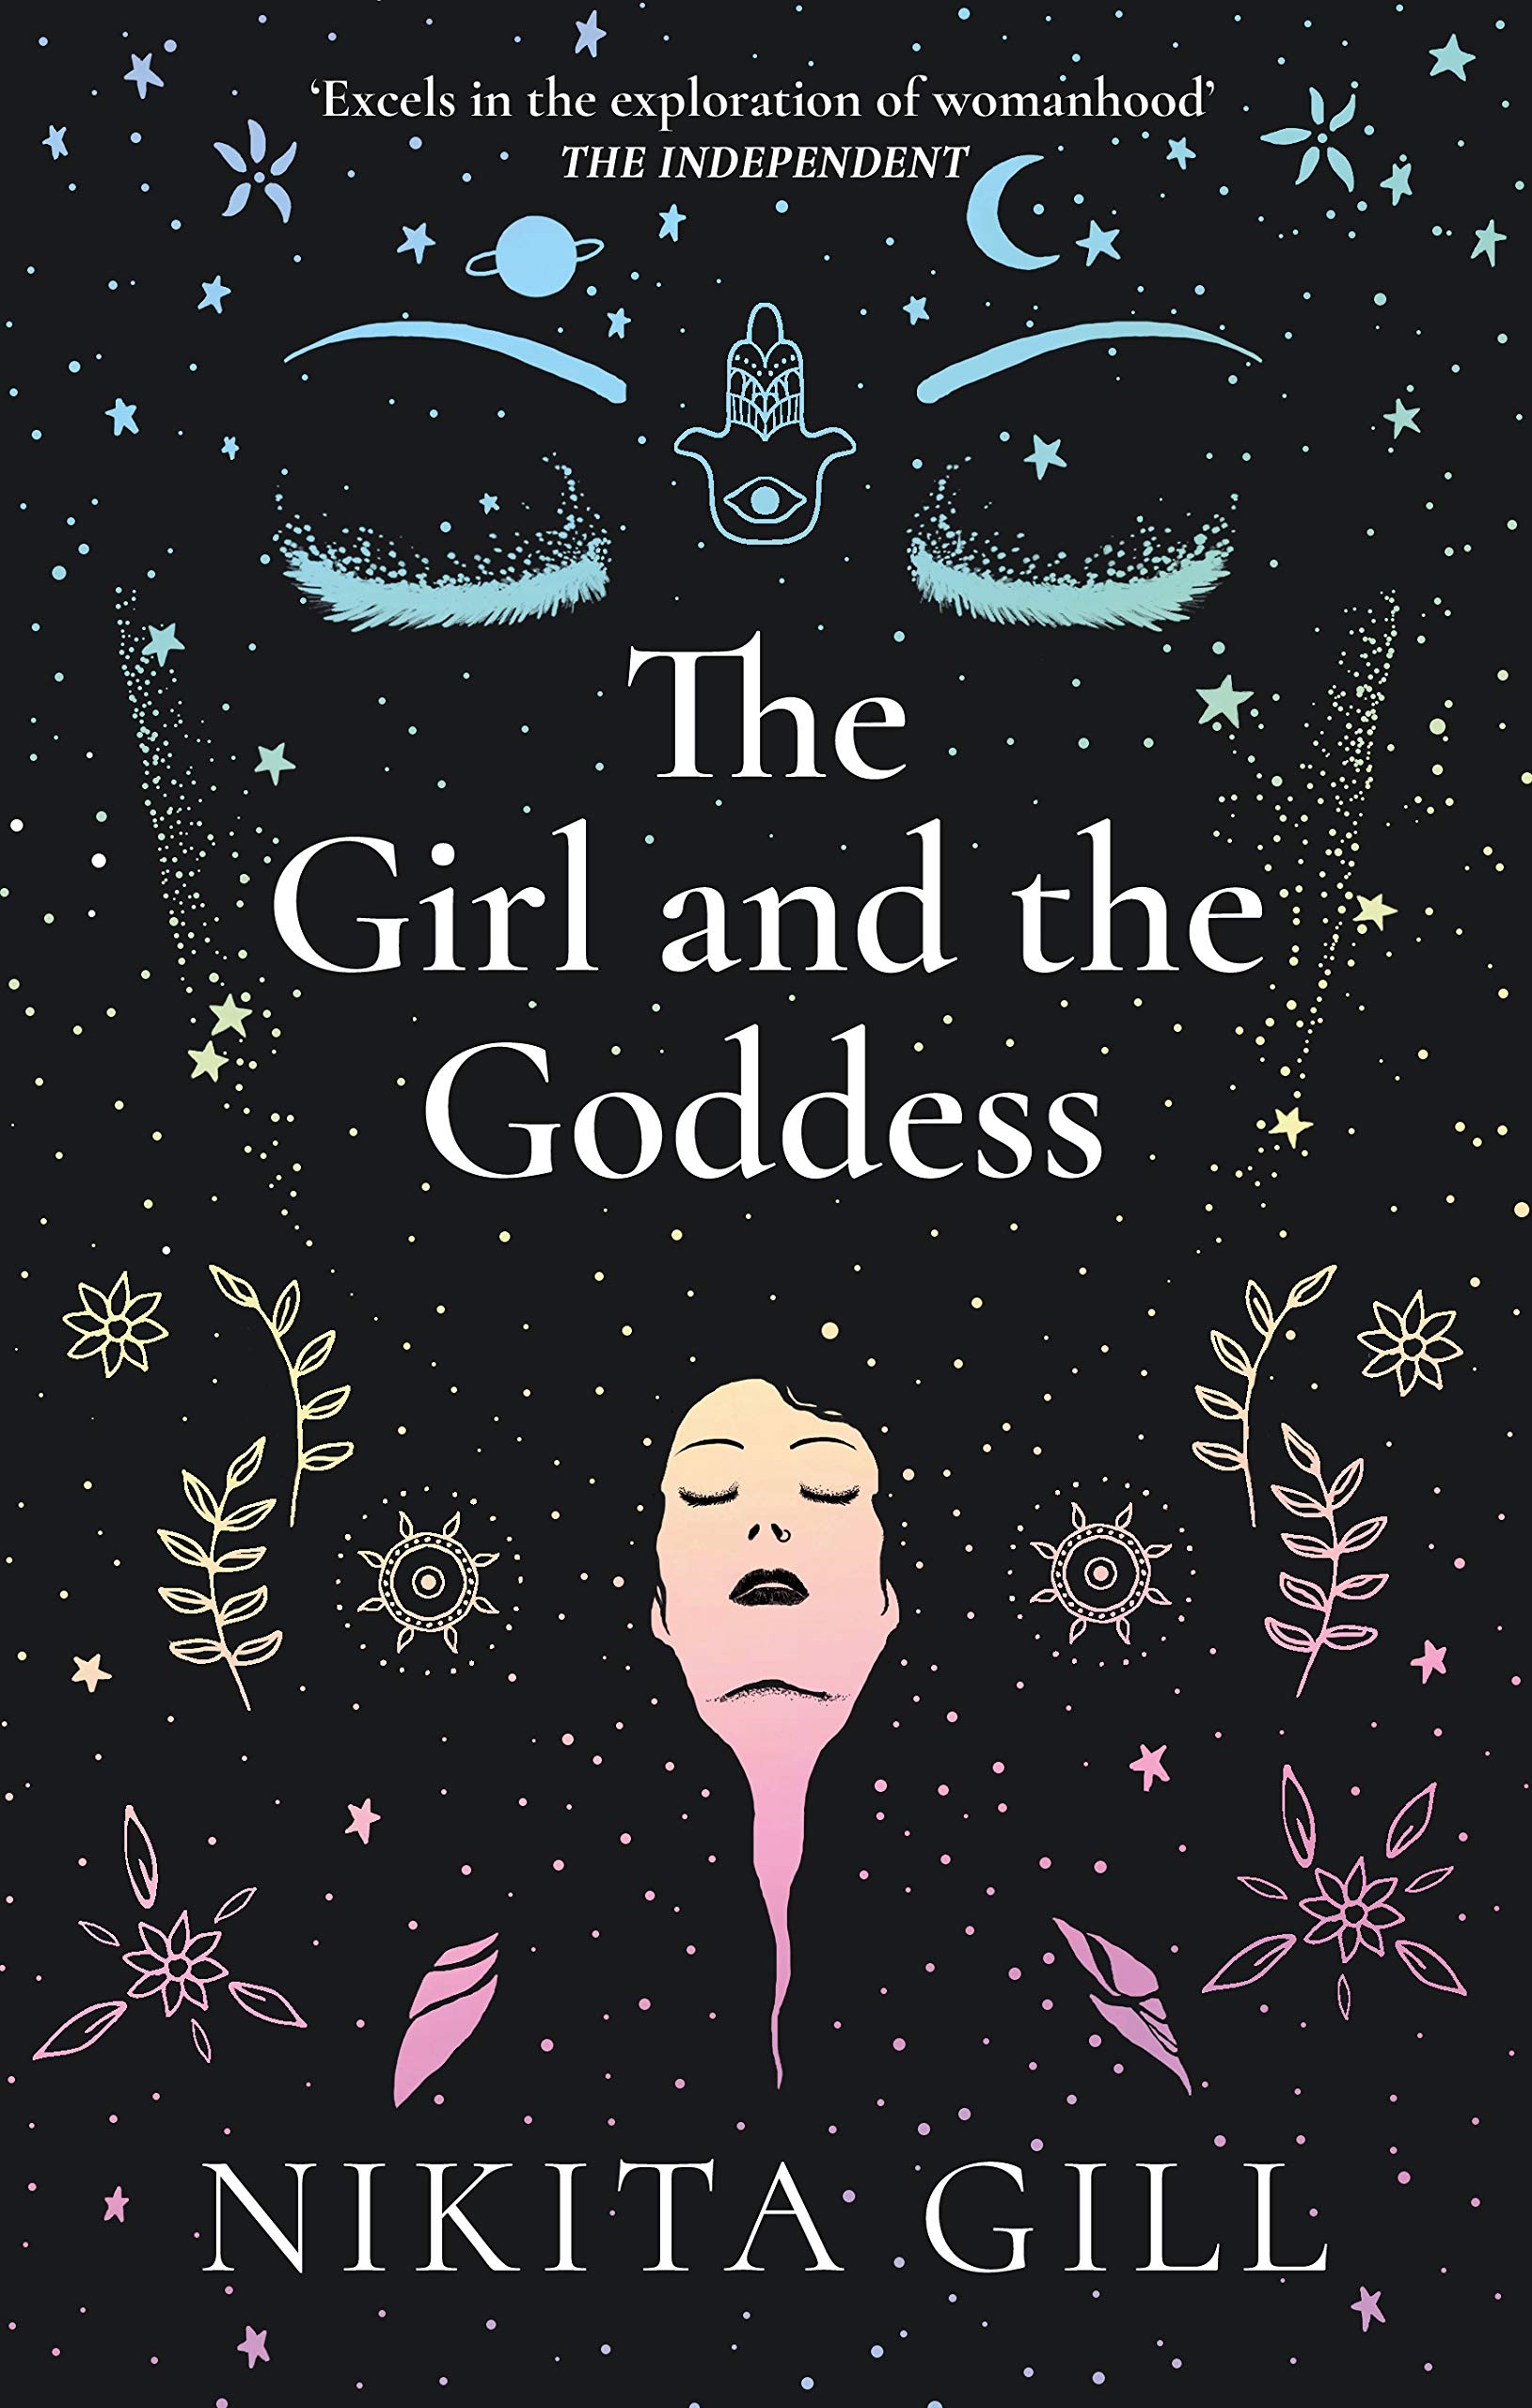 The Girl and the Goddess by Nikita Gill